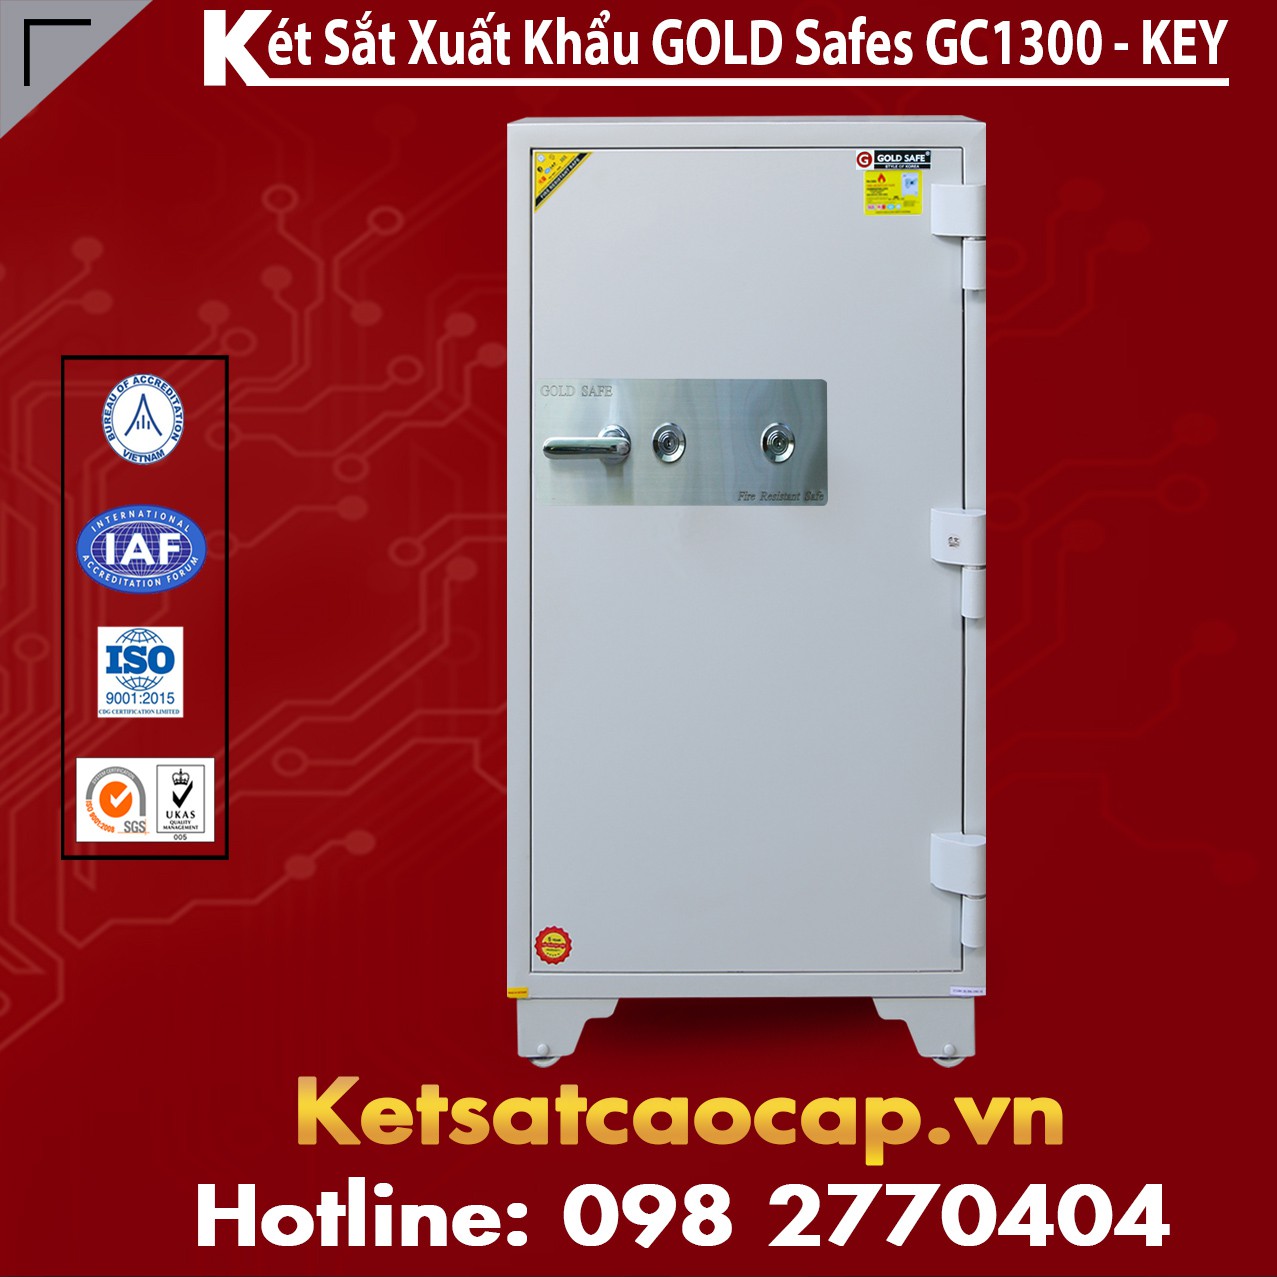 Két Sắt Đại Gia GOLD SAFES GC1300 KEY